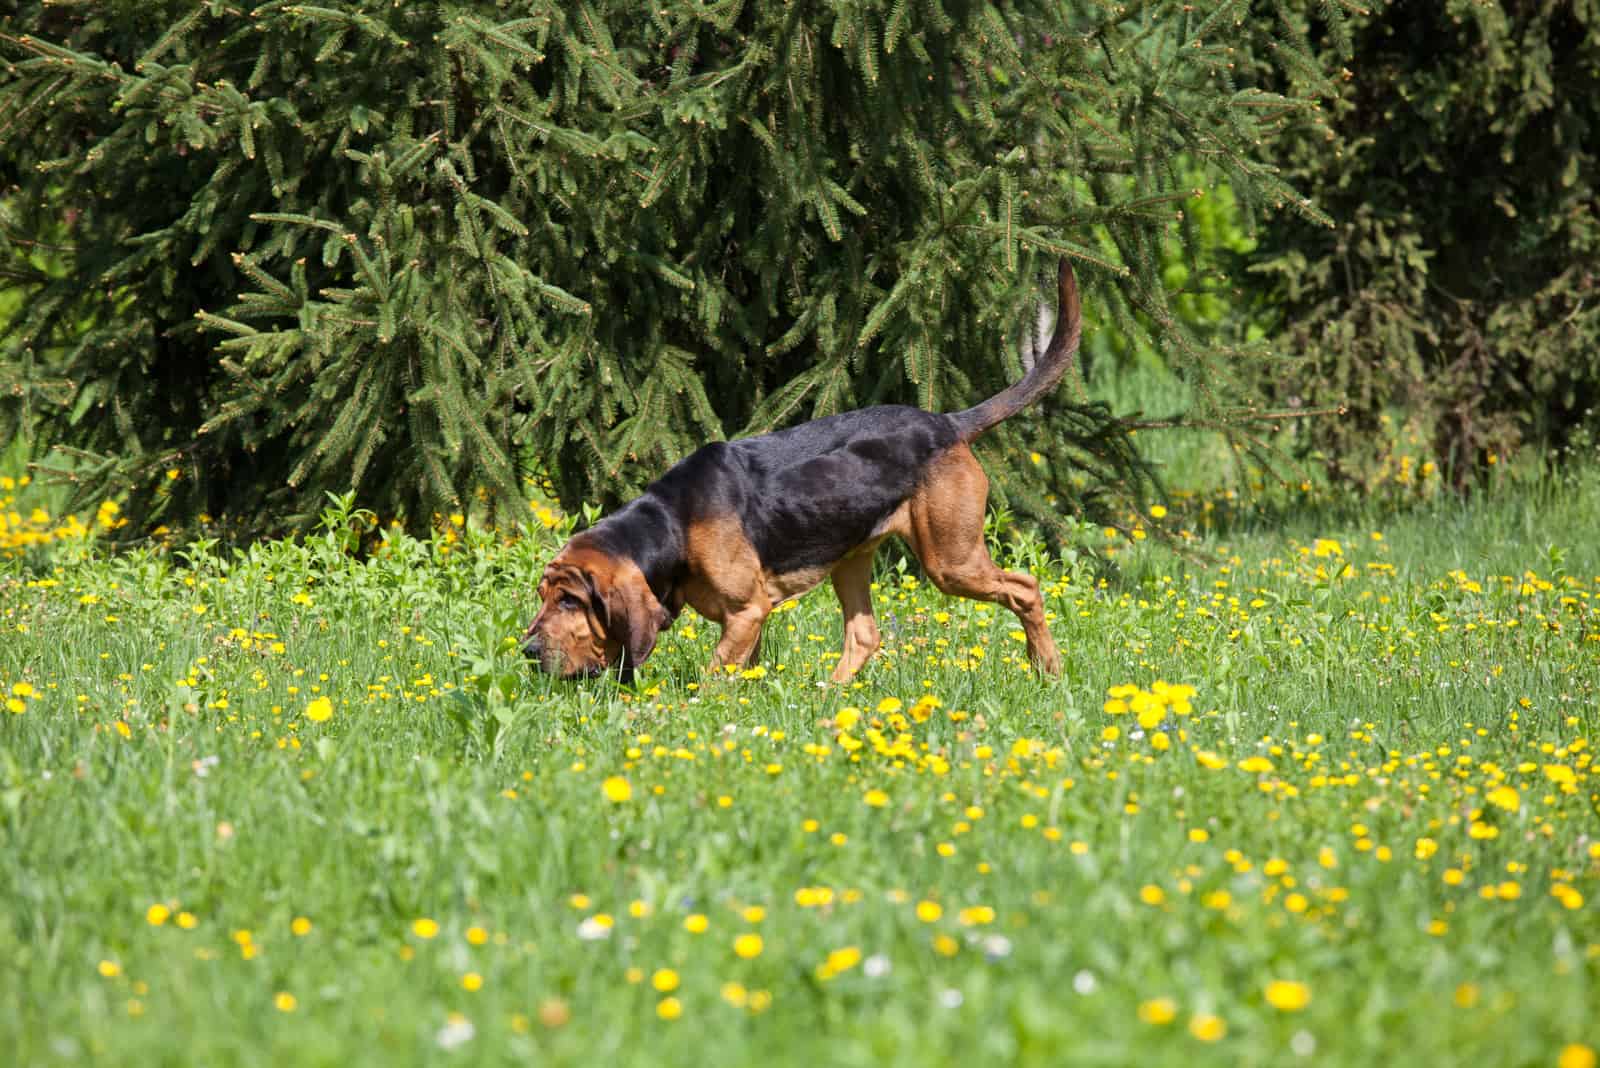 Bloodhound sniffs the grass